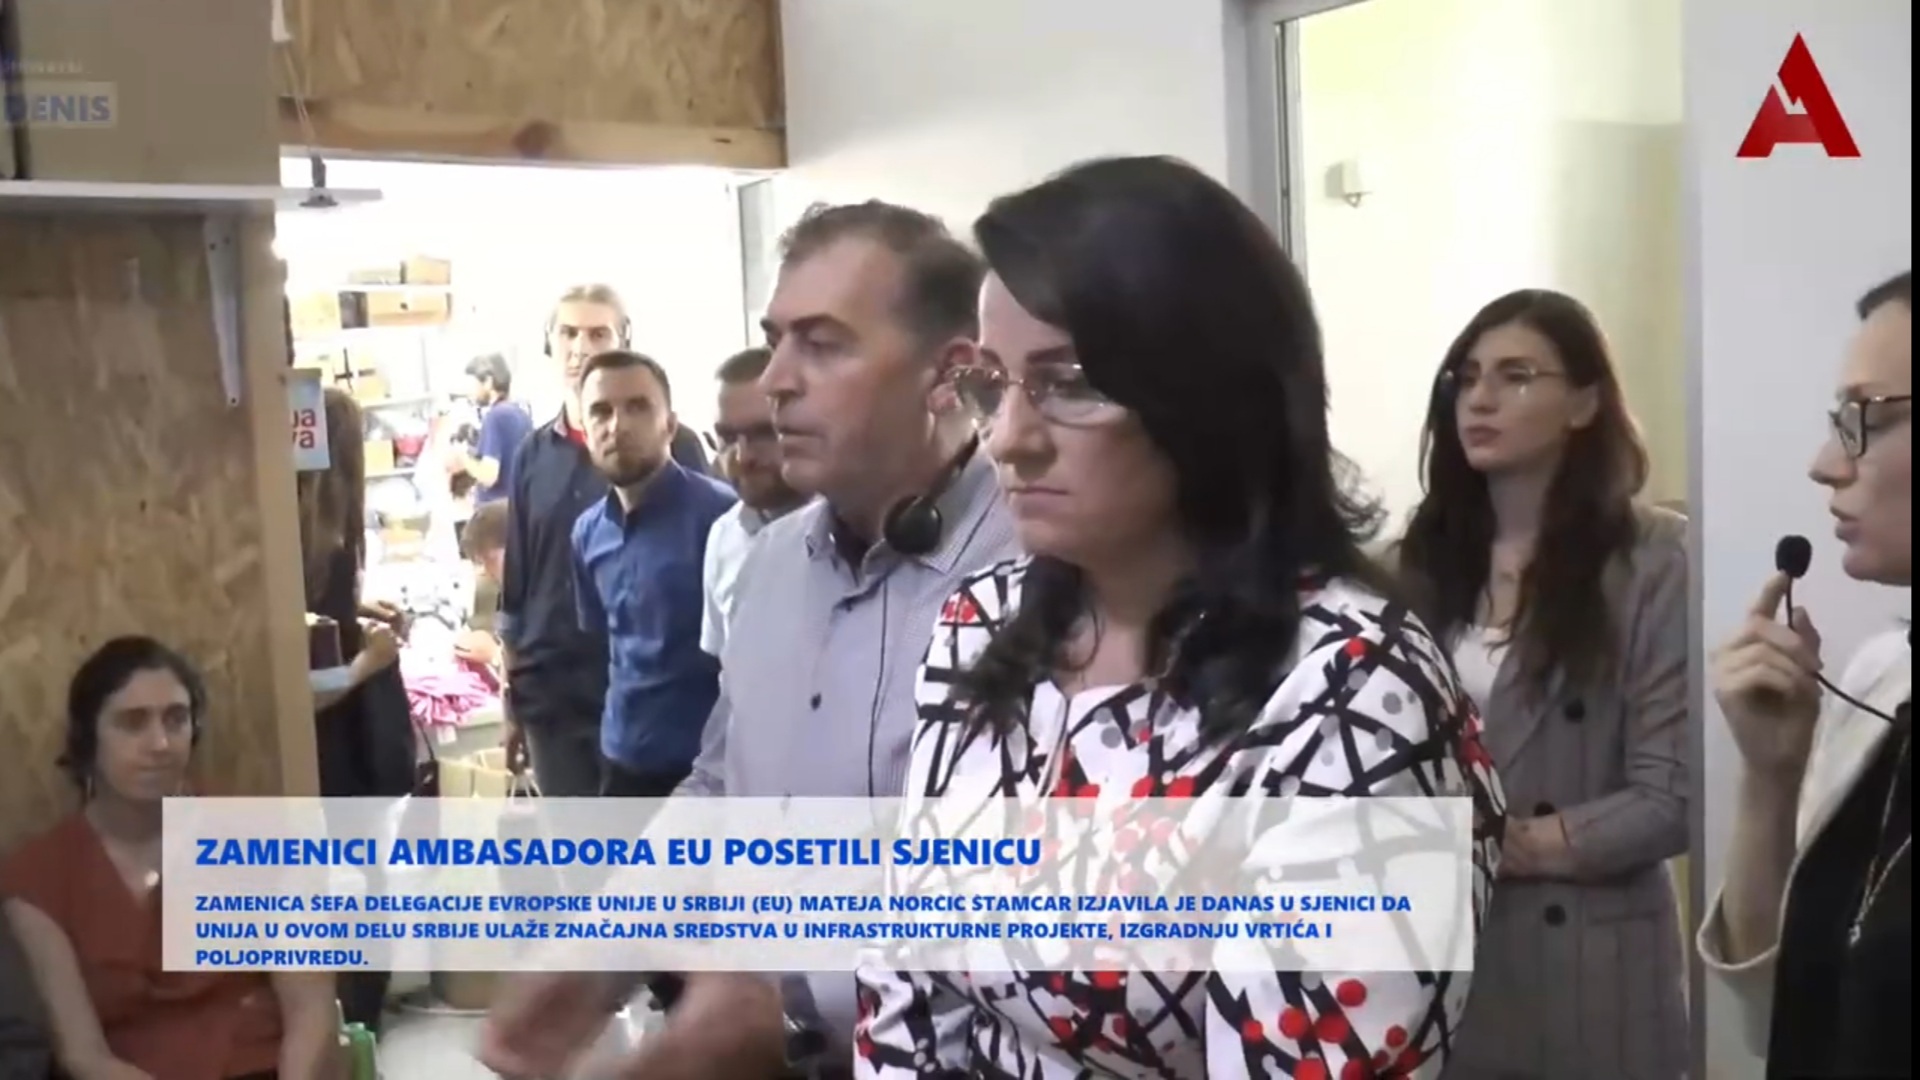 Zamenici ambasadora EU posetili Sjenicu (video)